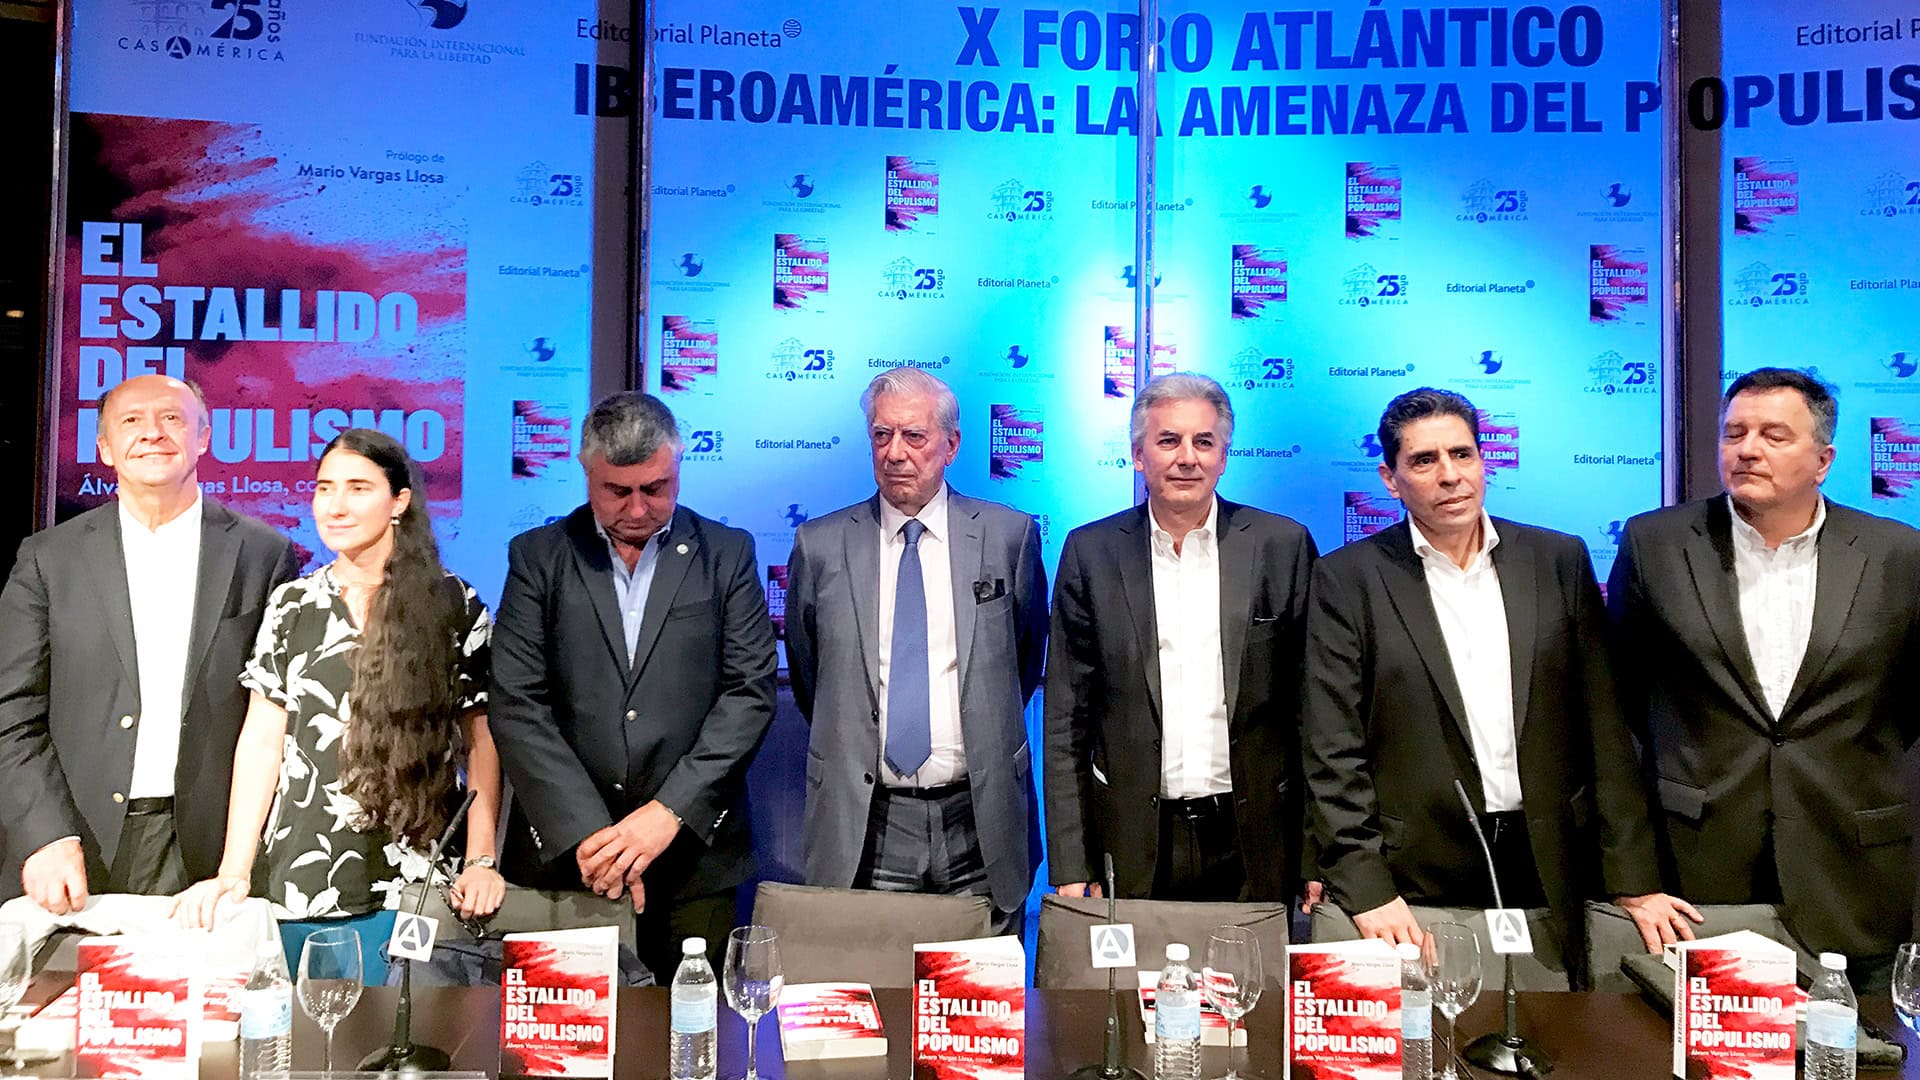 Mario Vargas Llosa: "El populismo es la enfermedad de la democracia"